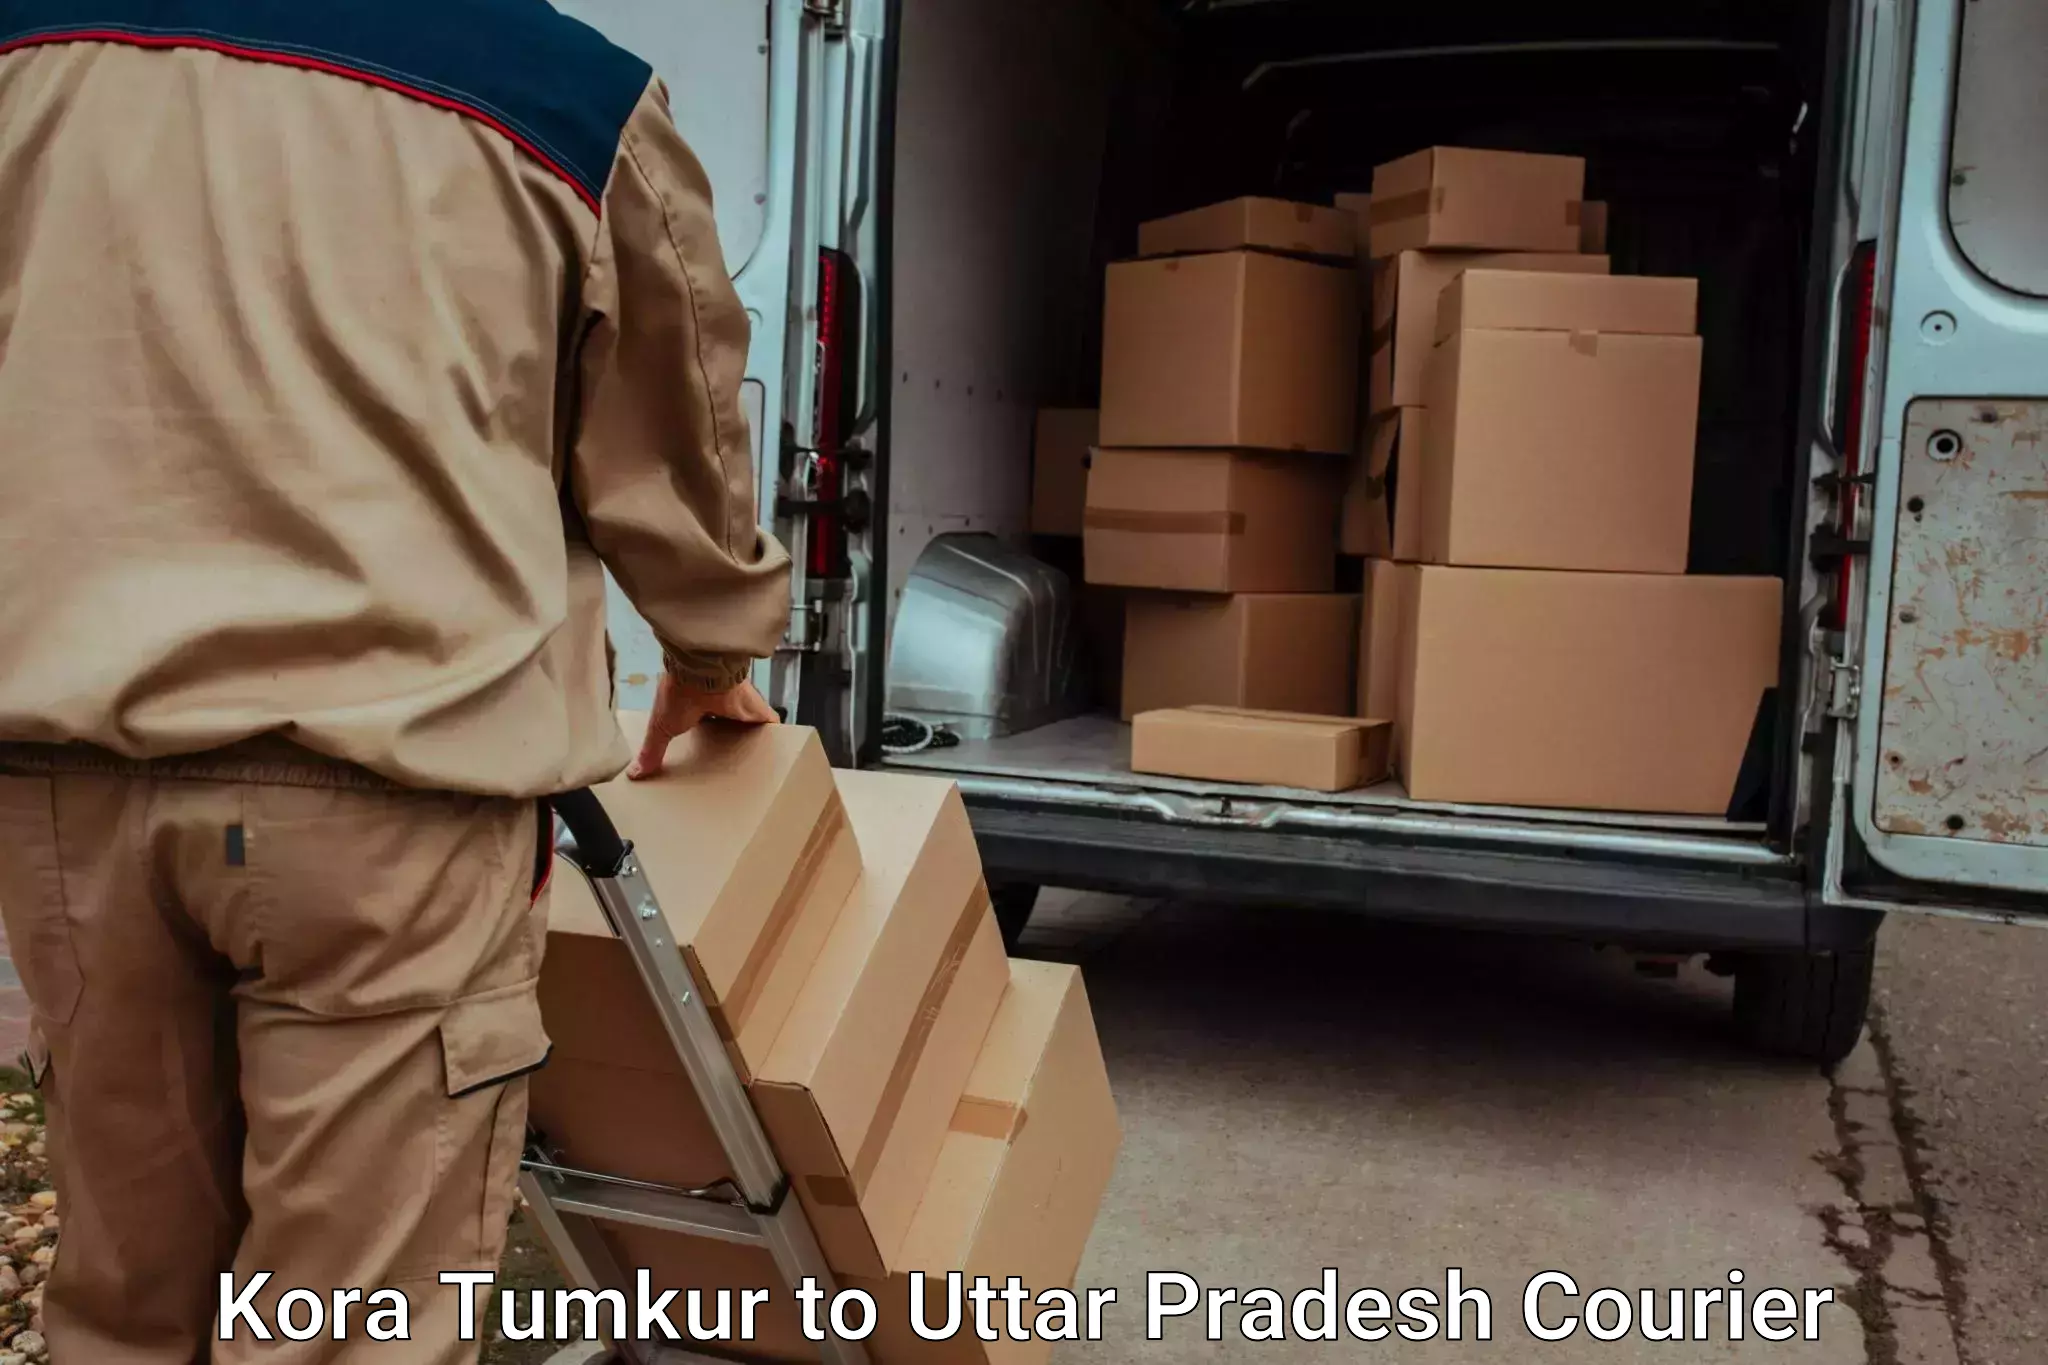 Luggage delivery providers Kora Tumkur to Akbarpur